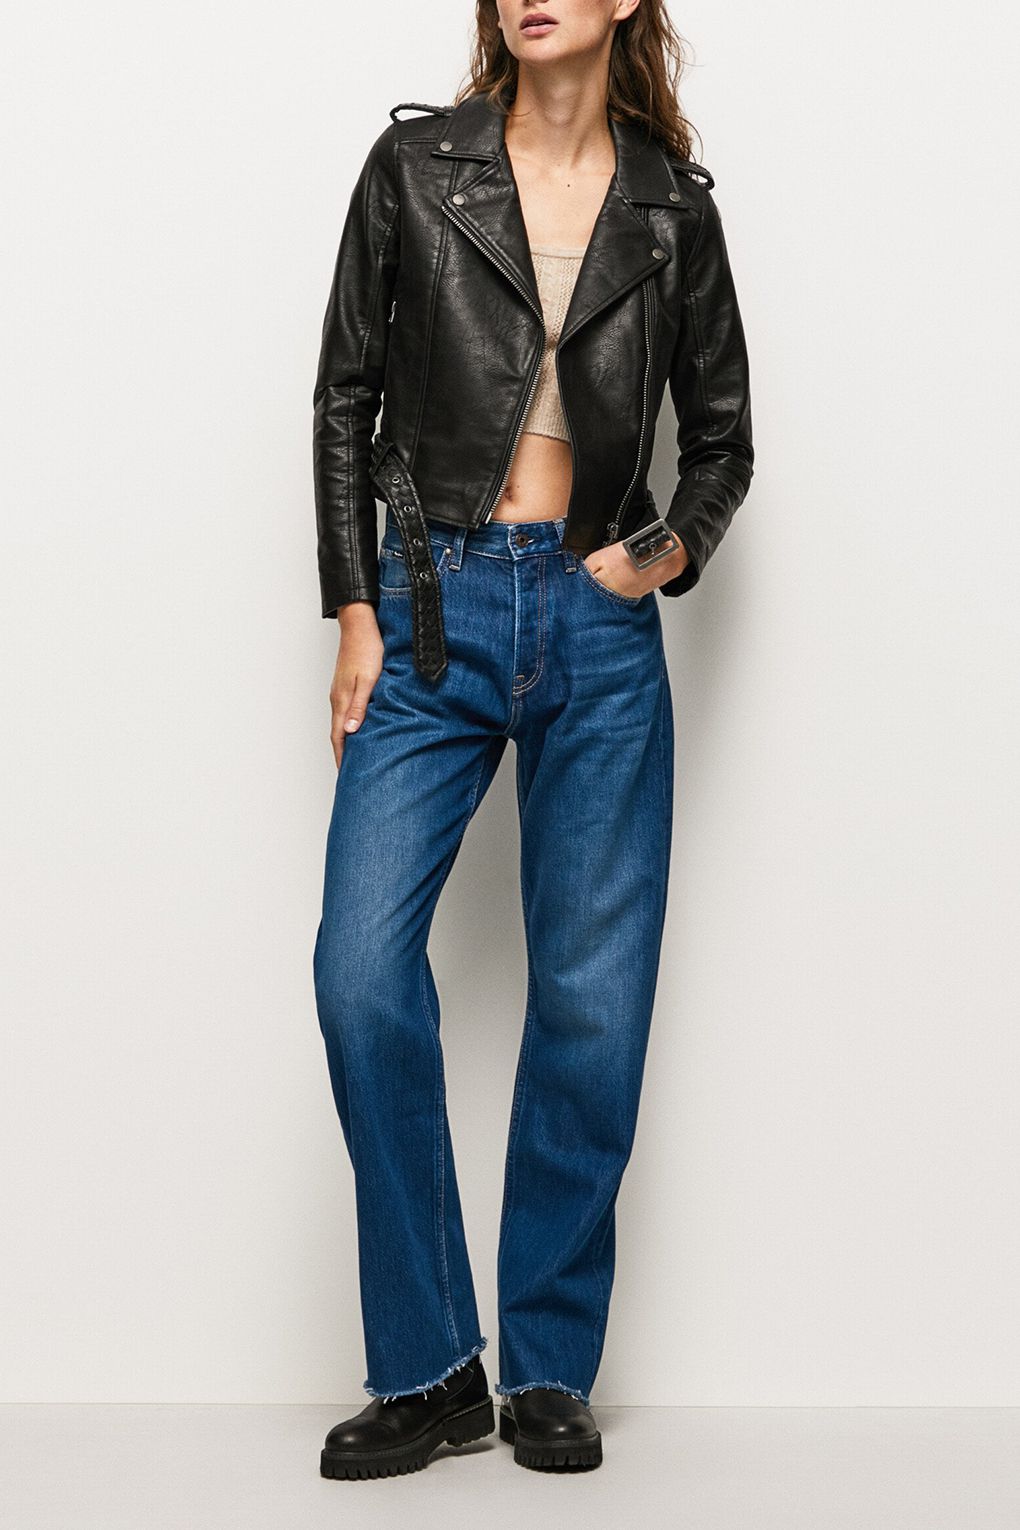 

Кожаная куртка женская Pepe Jeans London PL402156 черная M, Черный, PL402156